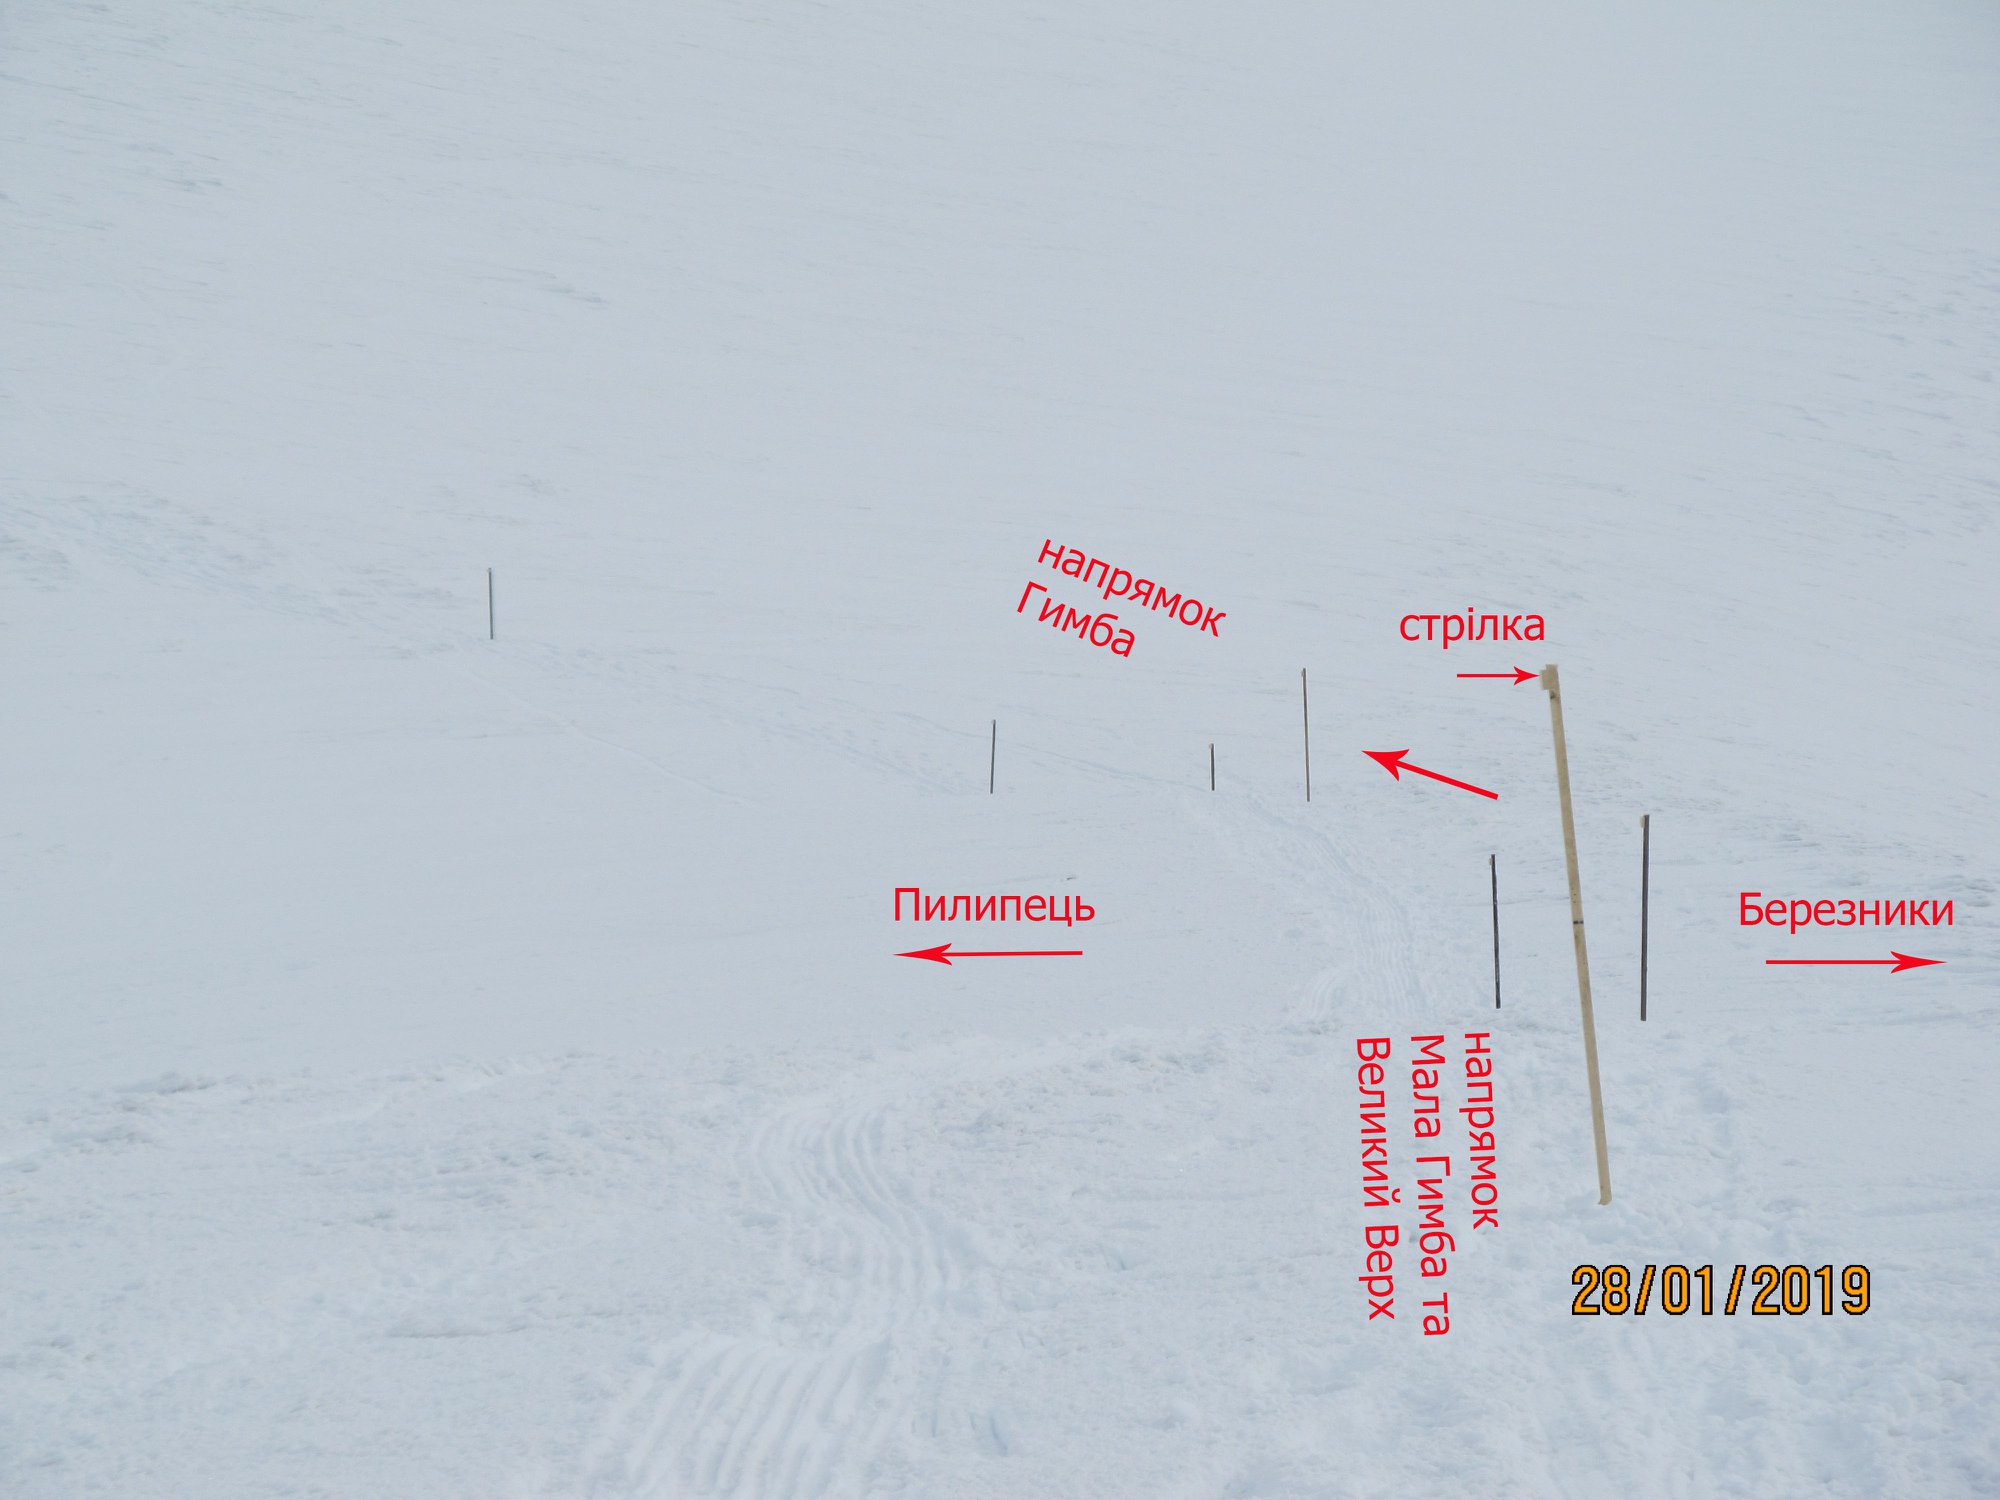 информационные указатели для туристов и лыжников на горе Гемба (Боржавский хребет) в Карпатах. Фото Василий Гутиряк